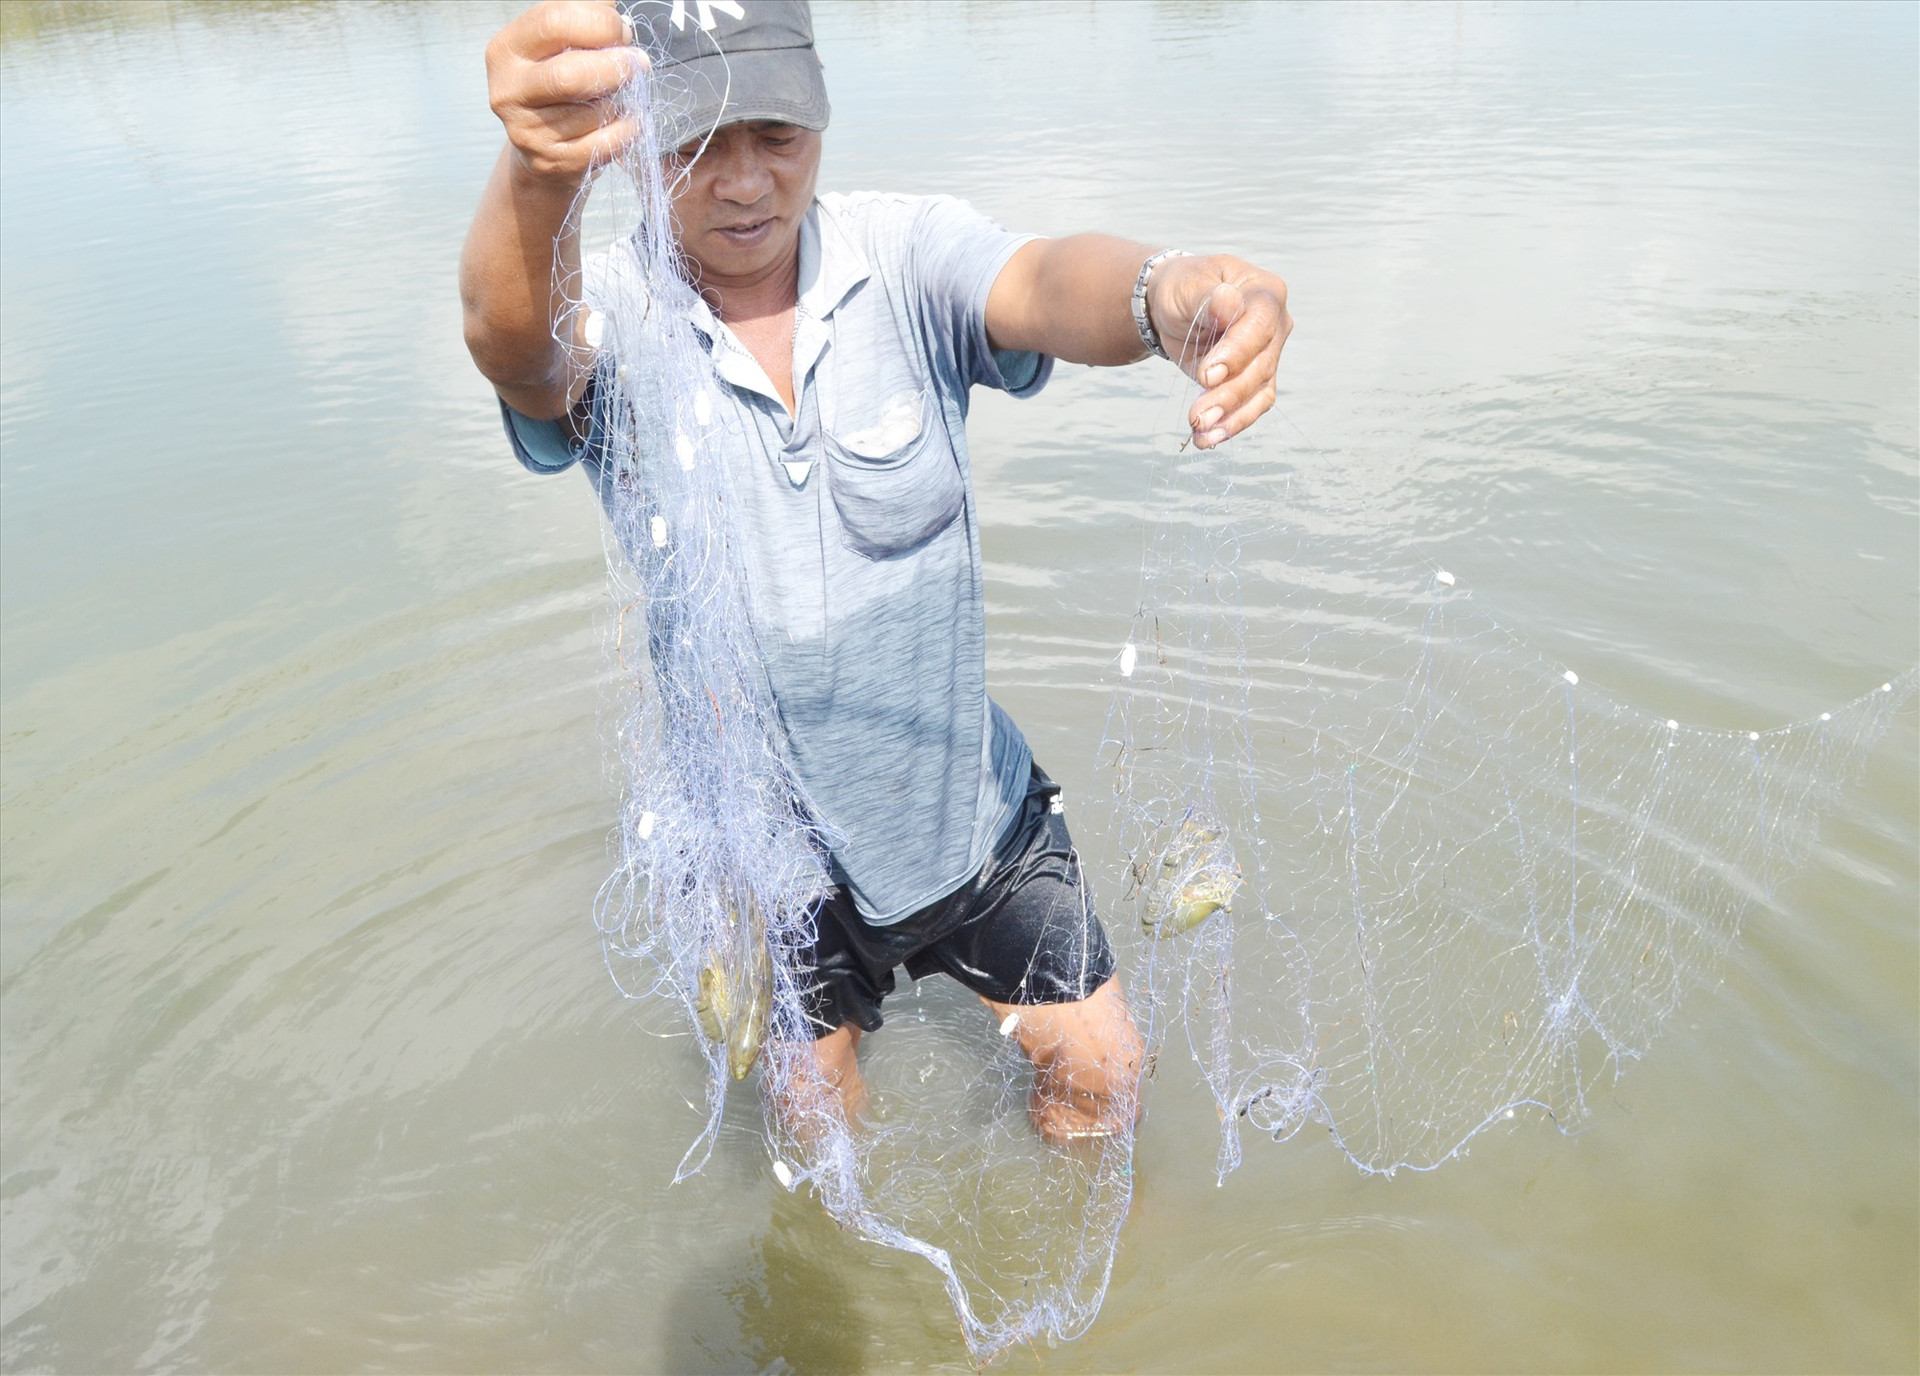 Hỗ trợ nuôi ghép cá dìa với tôm sú, cua xanh giúp người dân Núi Thành phát triển kinh tế. Ảnh: VIỆT QUANG